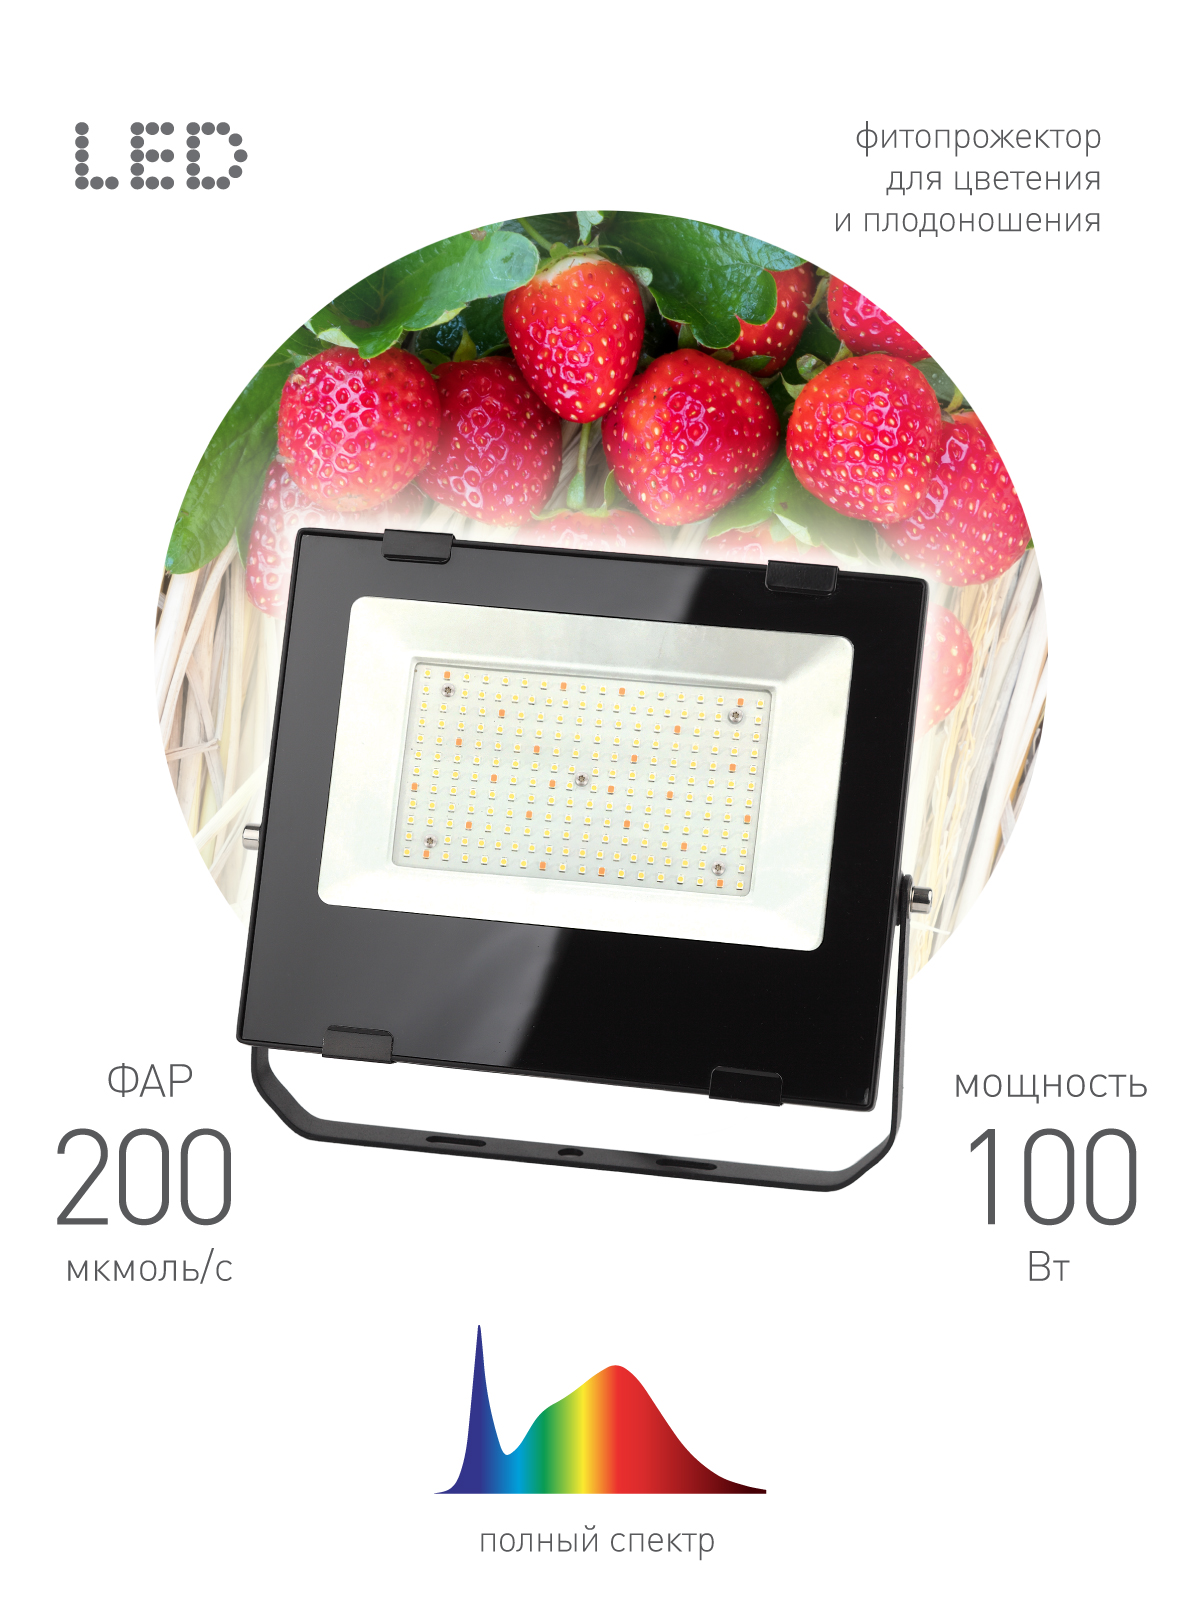 FITO-100W-Ra90-LED ЭРА ФИТО прожектор для  цветения и плодоношения (10/240)